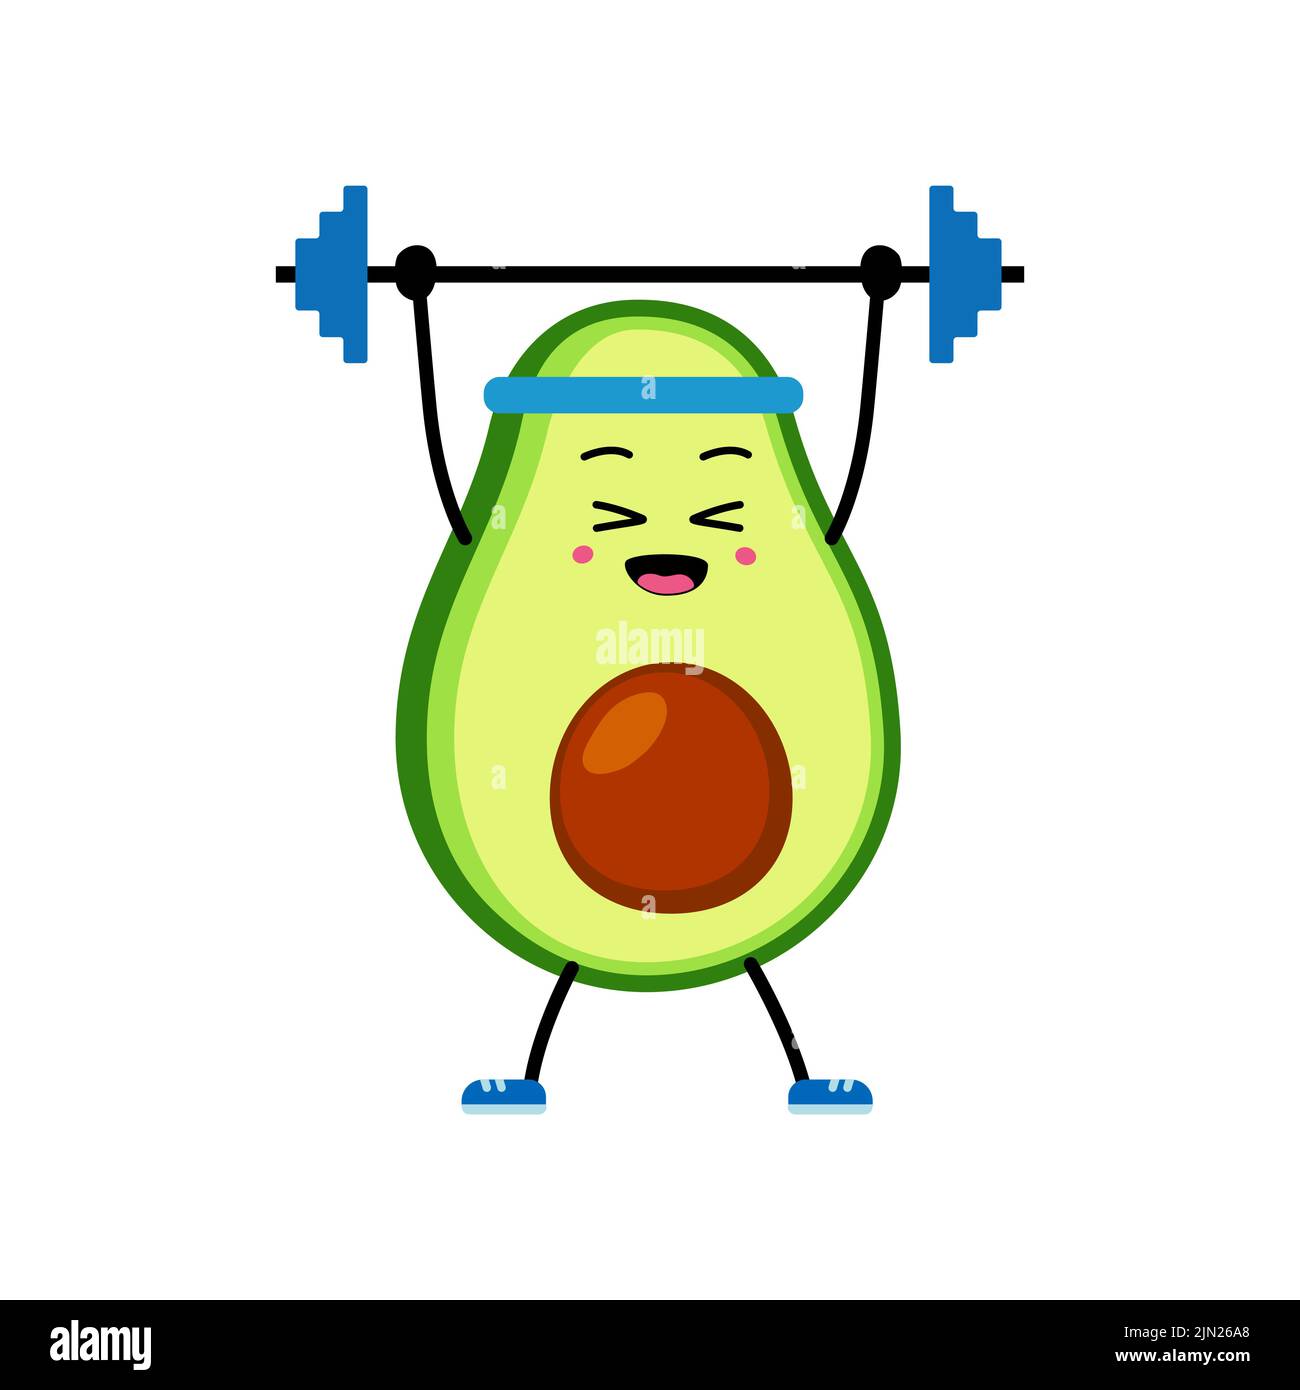 Niedliche Avocado Charakter macht Sport Powerlifting. Cartoon Happy Avocado bei einem Sport-Workout Gewichtheben. Vektorgrafik auf weißem Hintergrund. Con Stock Vektor